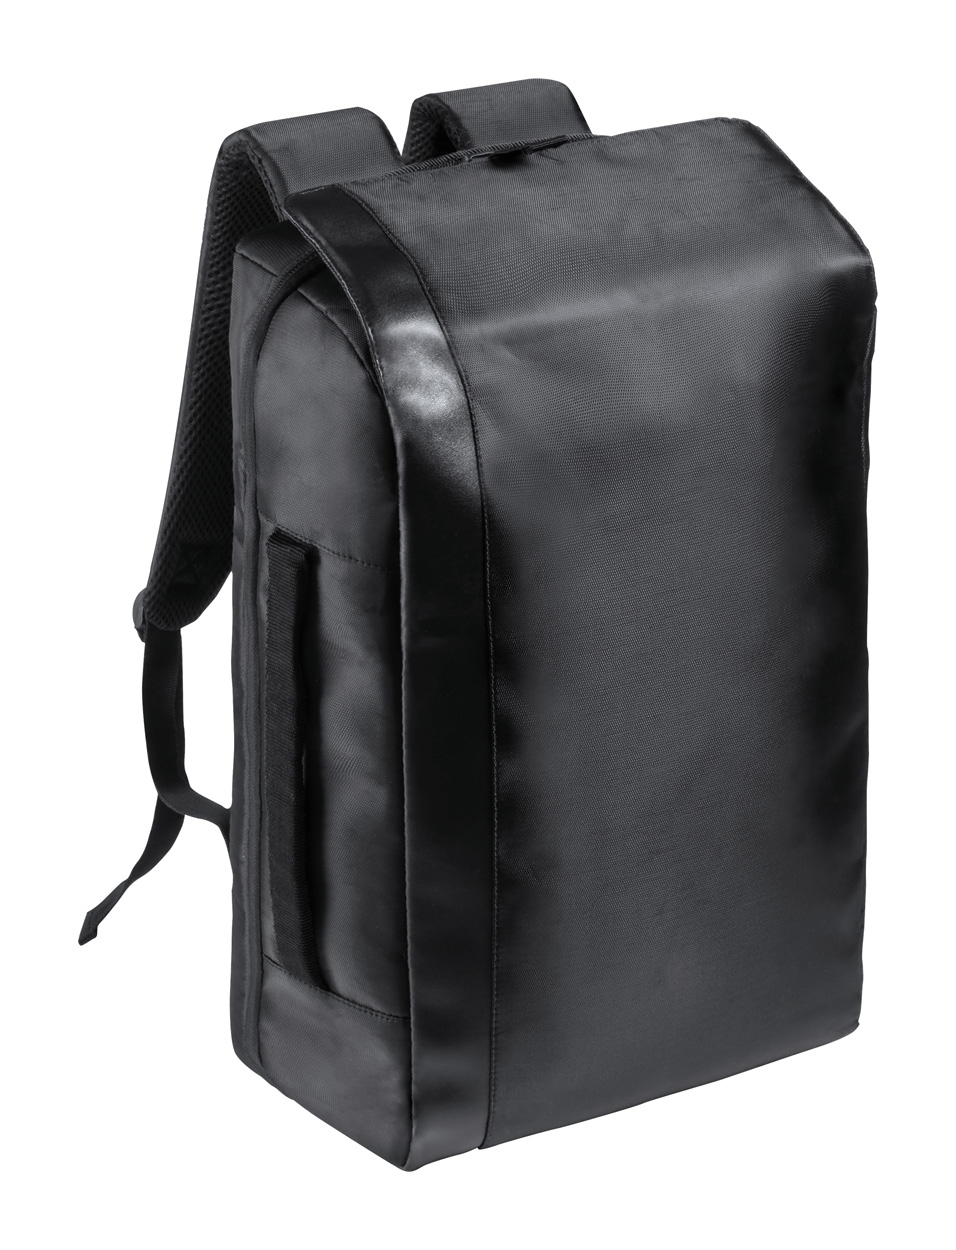 Waterproof document backpack SLEITER - black